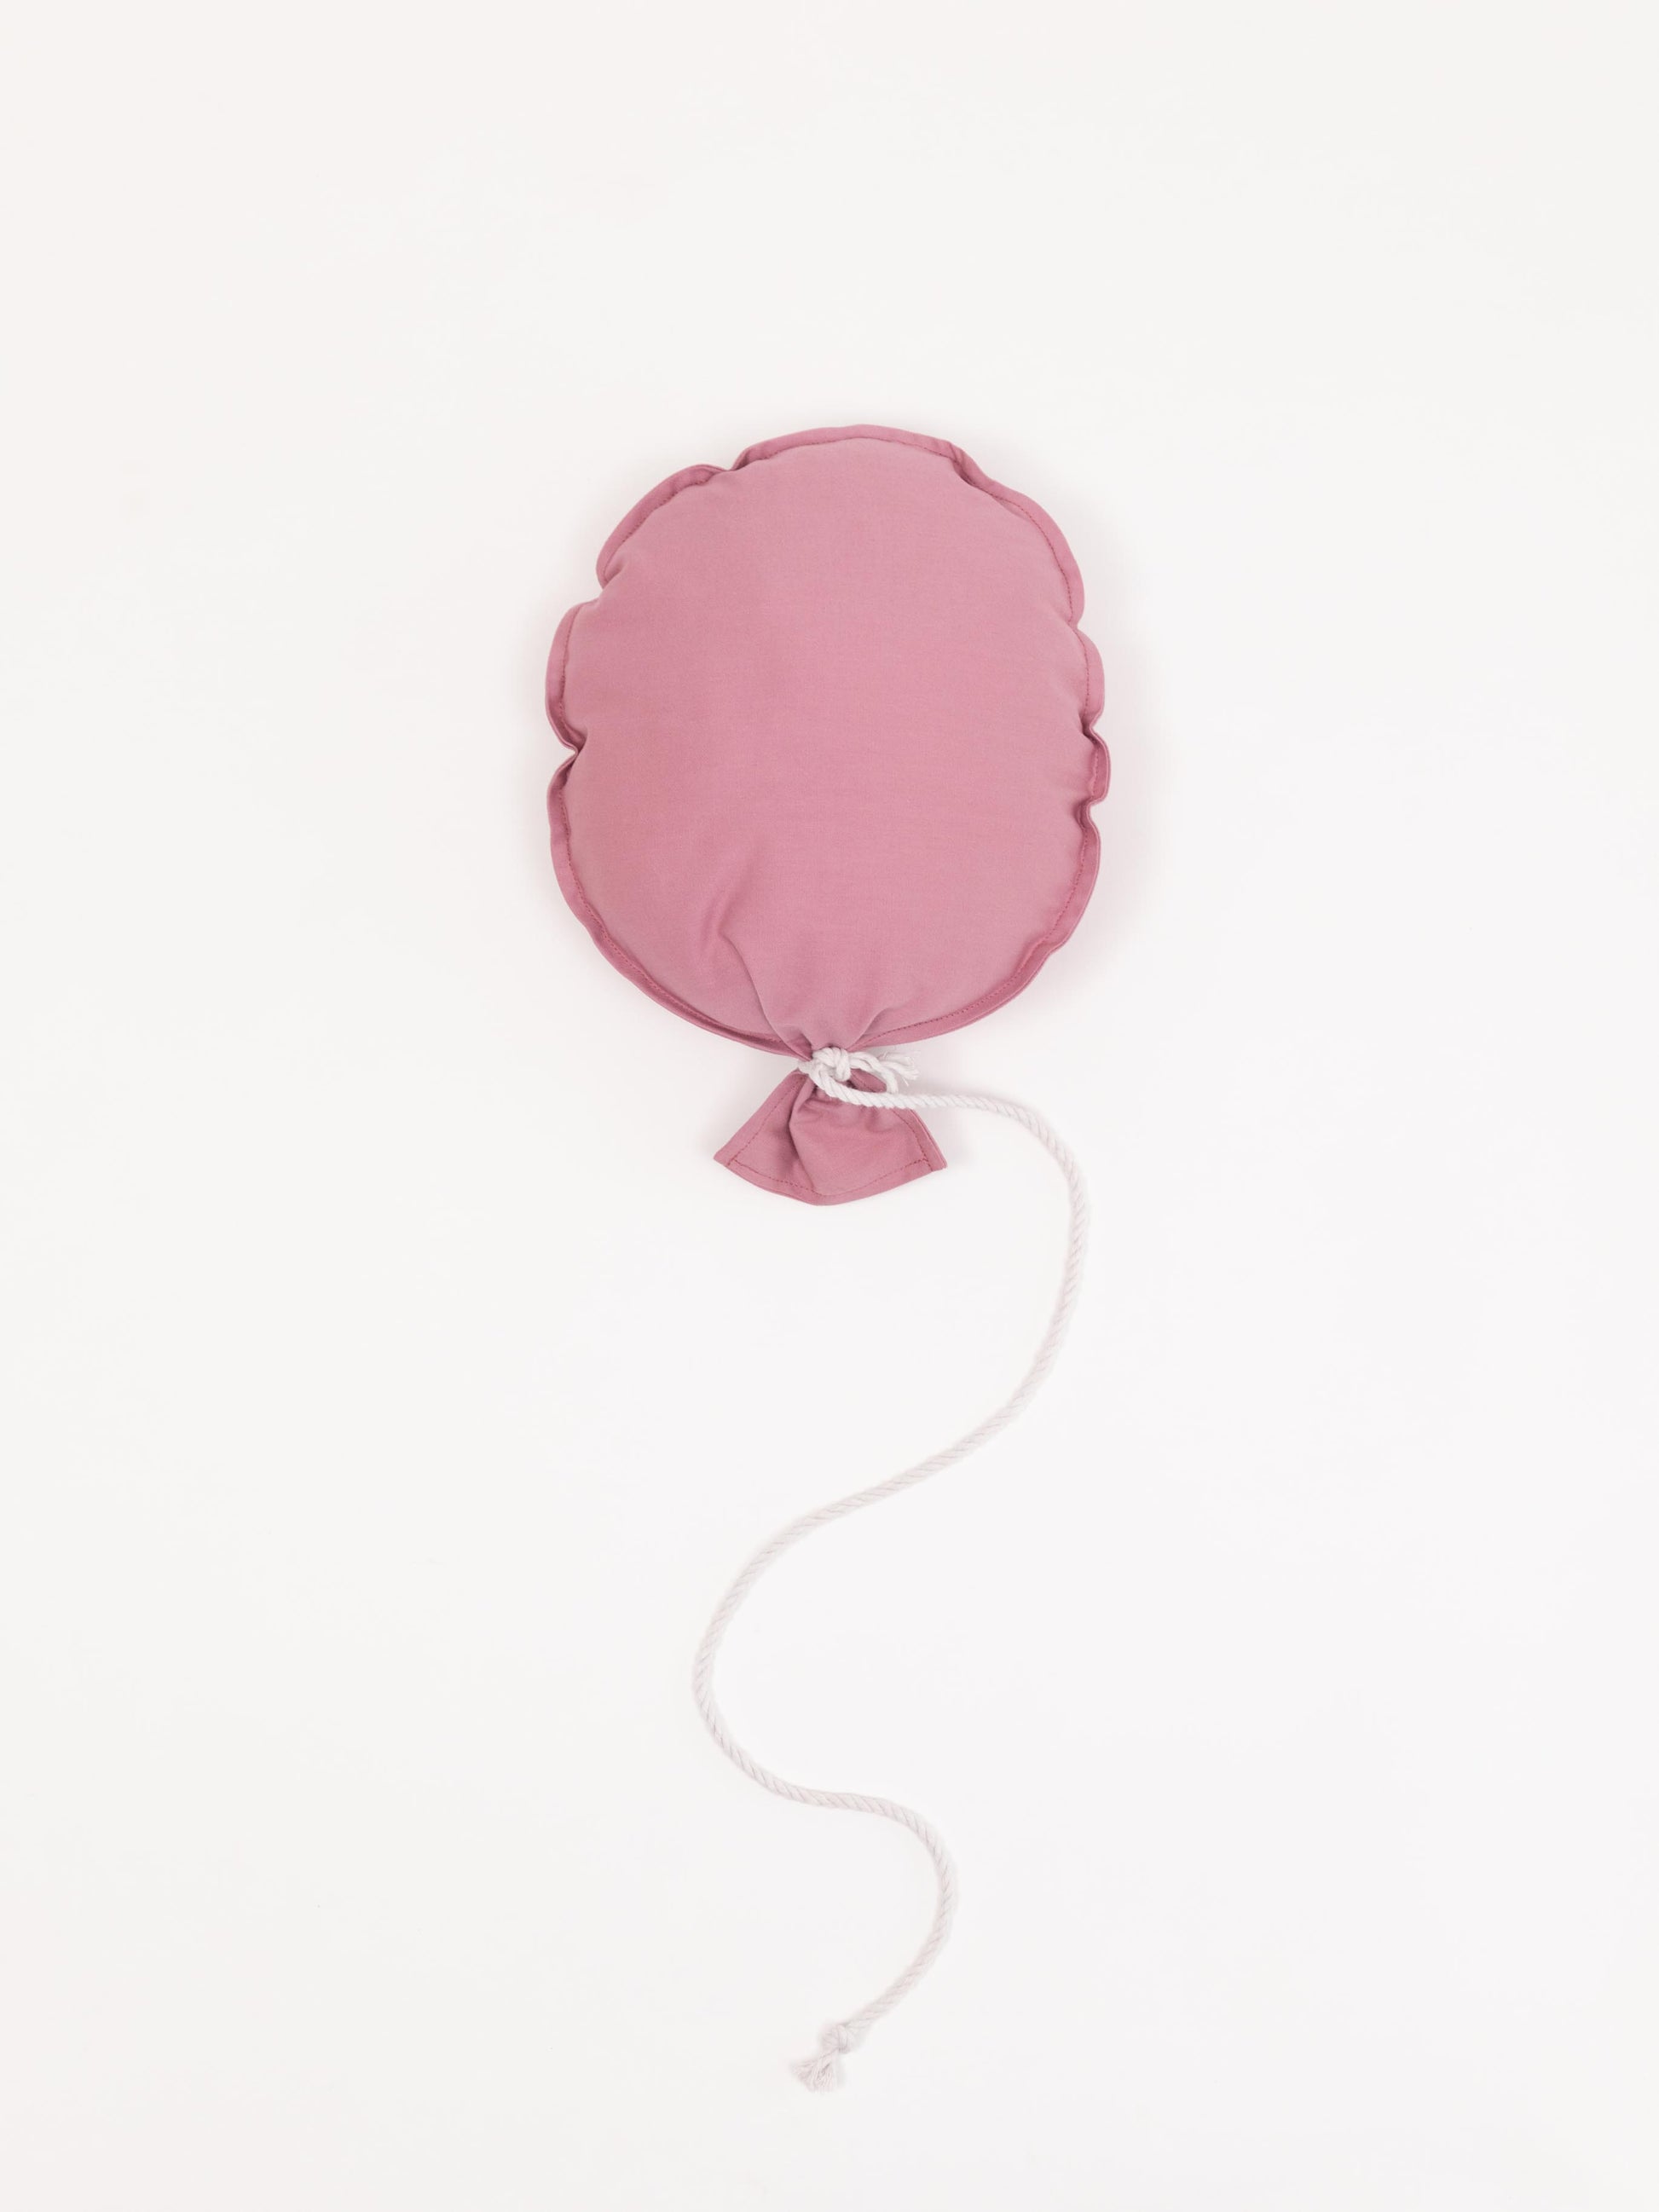 Bunter Stoff-Luftballon für die Kinderzimmerdecke, sorgt für heitere Atmosphäre und liebevolle Dekoration.